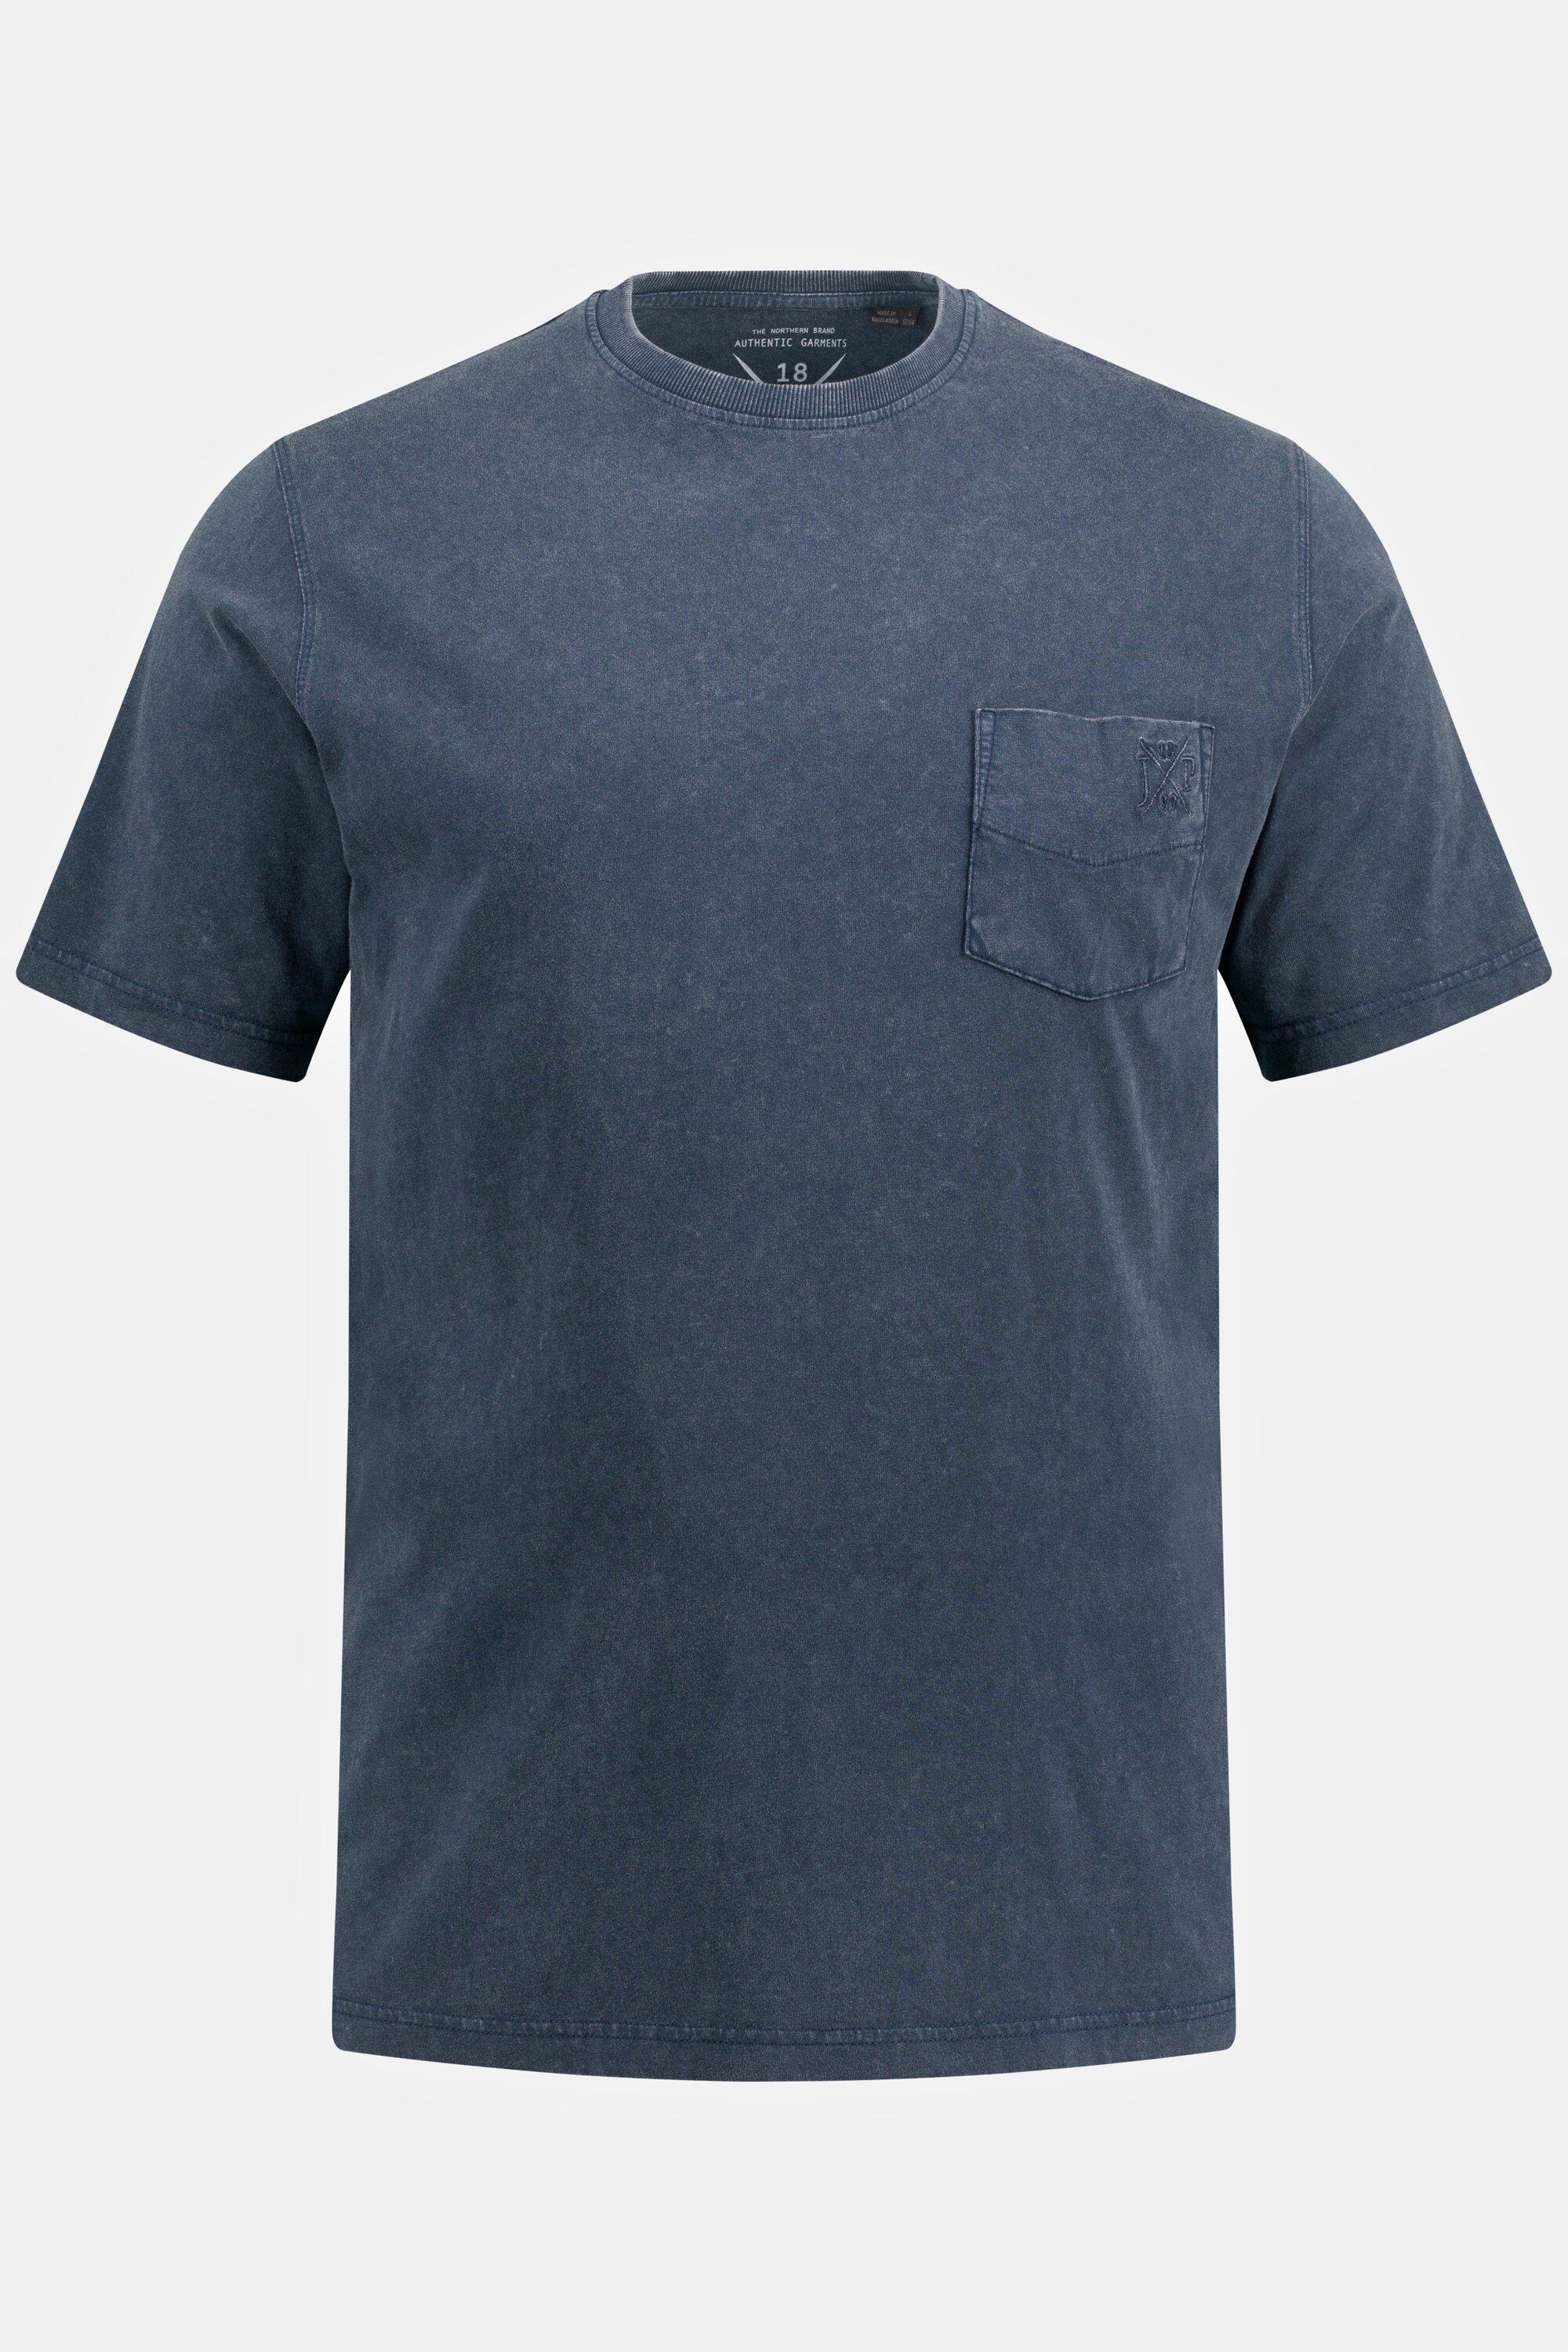 Brusttasche Rundhals T-Shirt Halbarm mattes T-Shirt JP1880 nachtblau